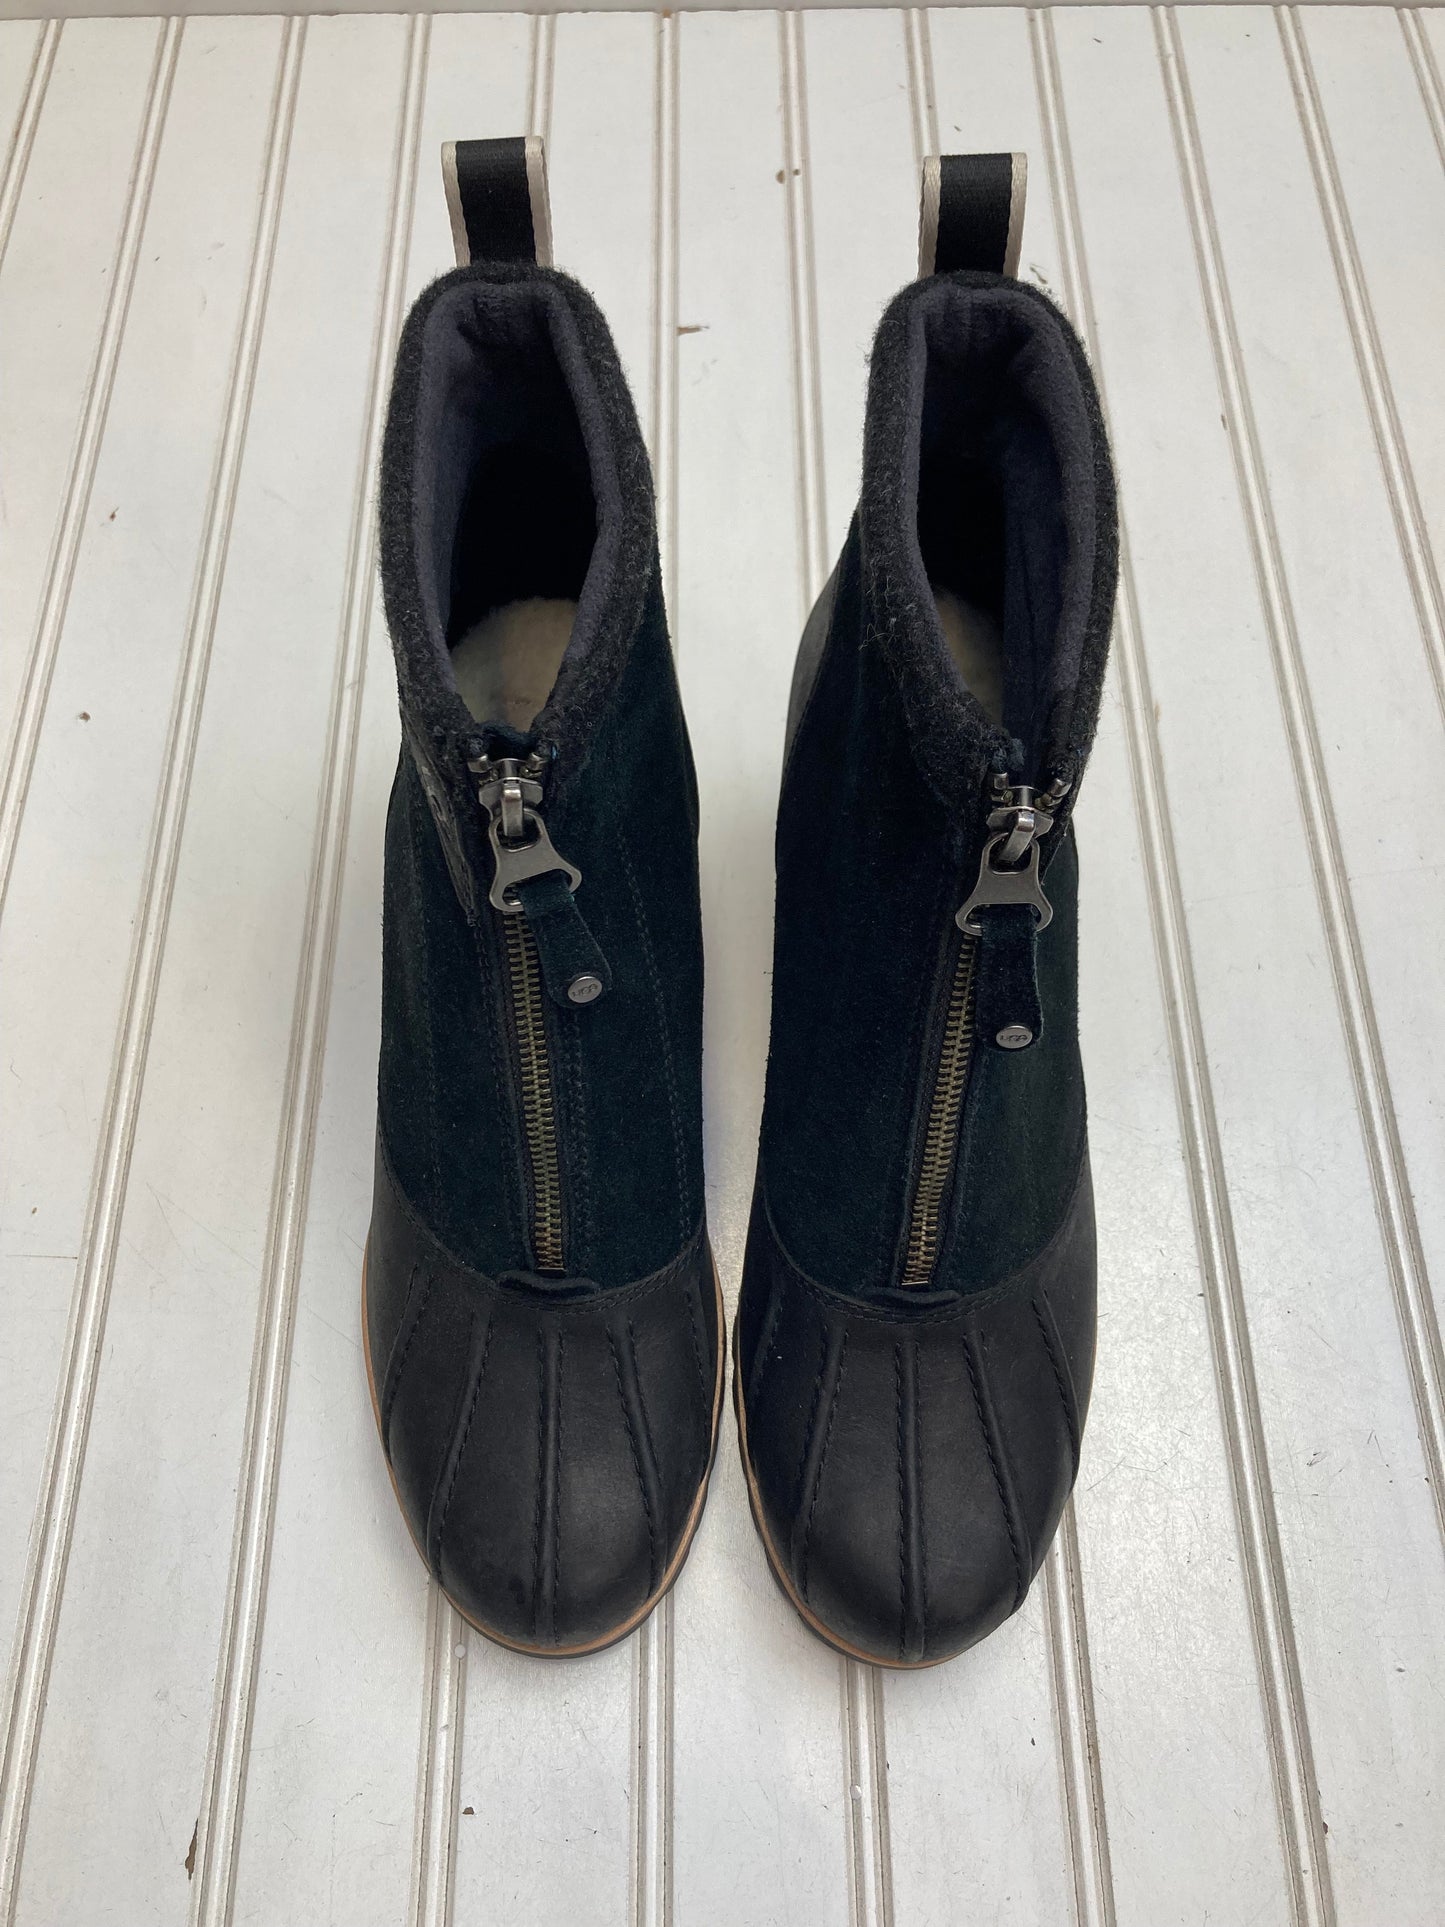 Black Boots Designer Ugg, Size 9